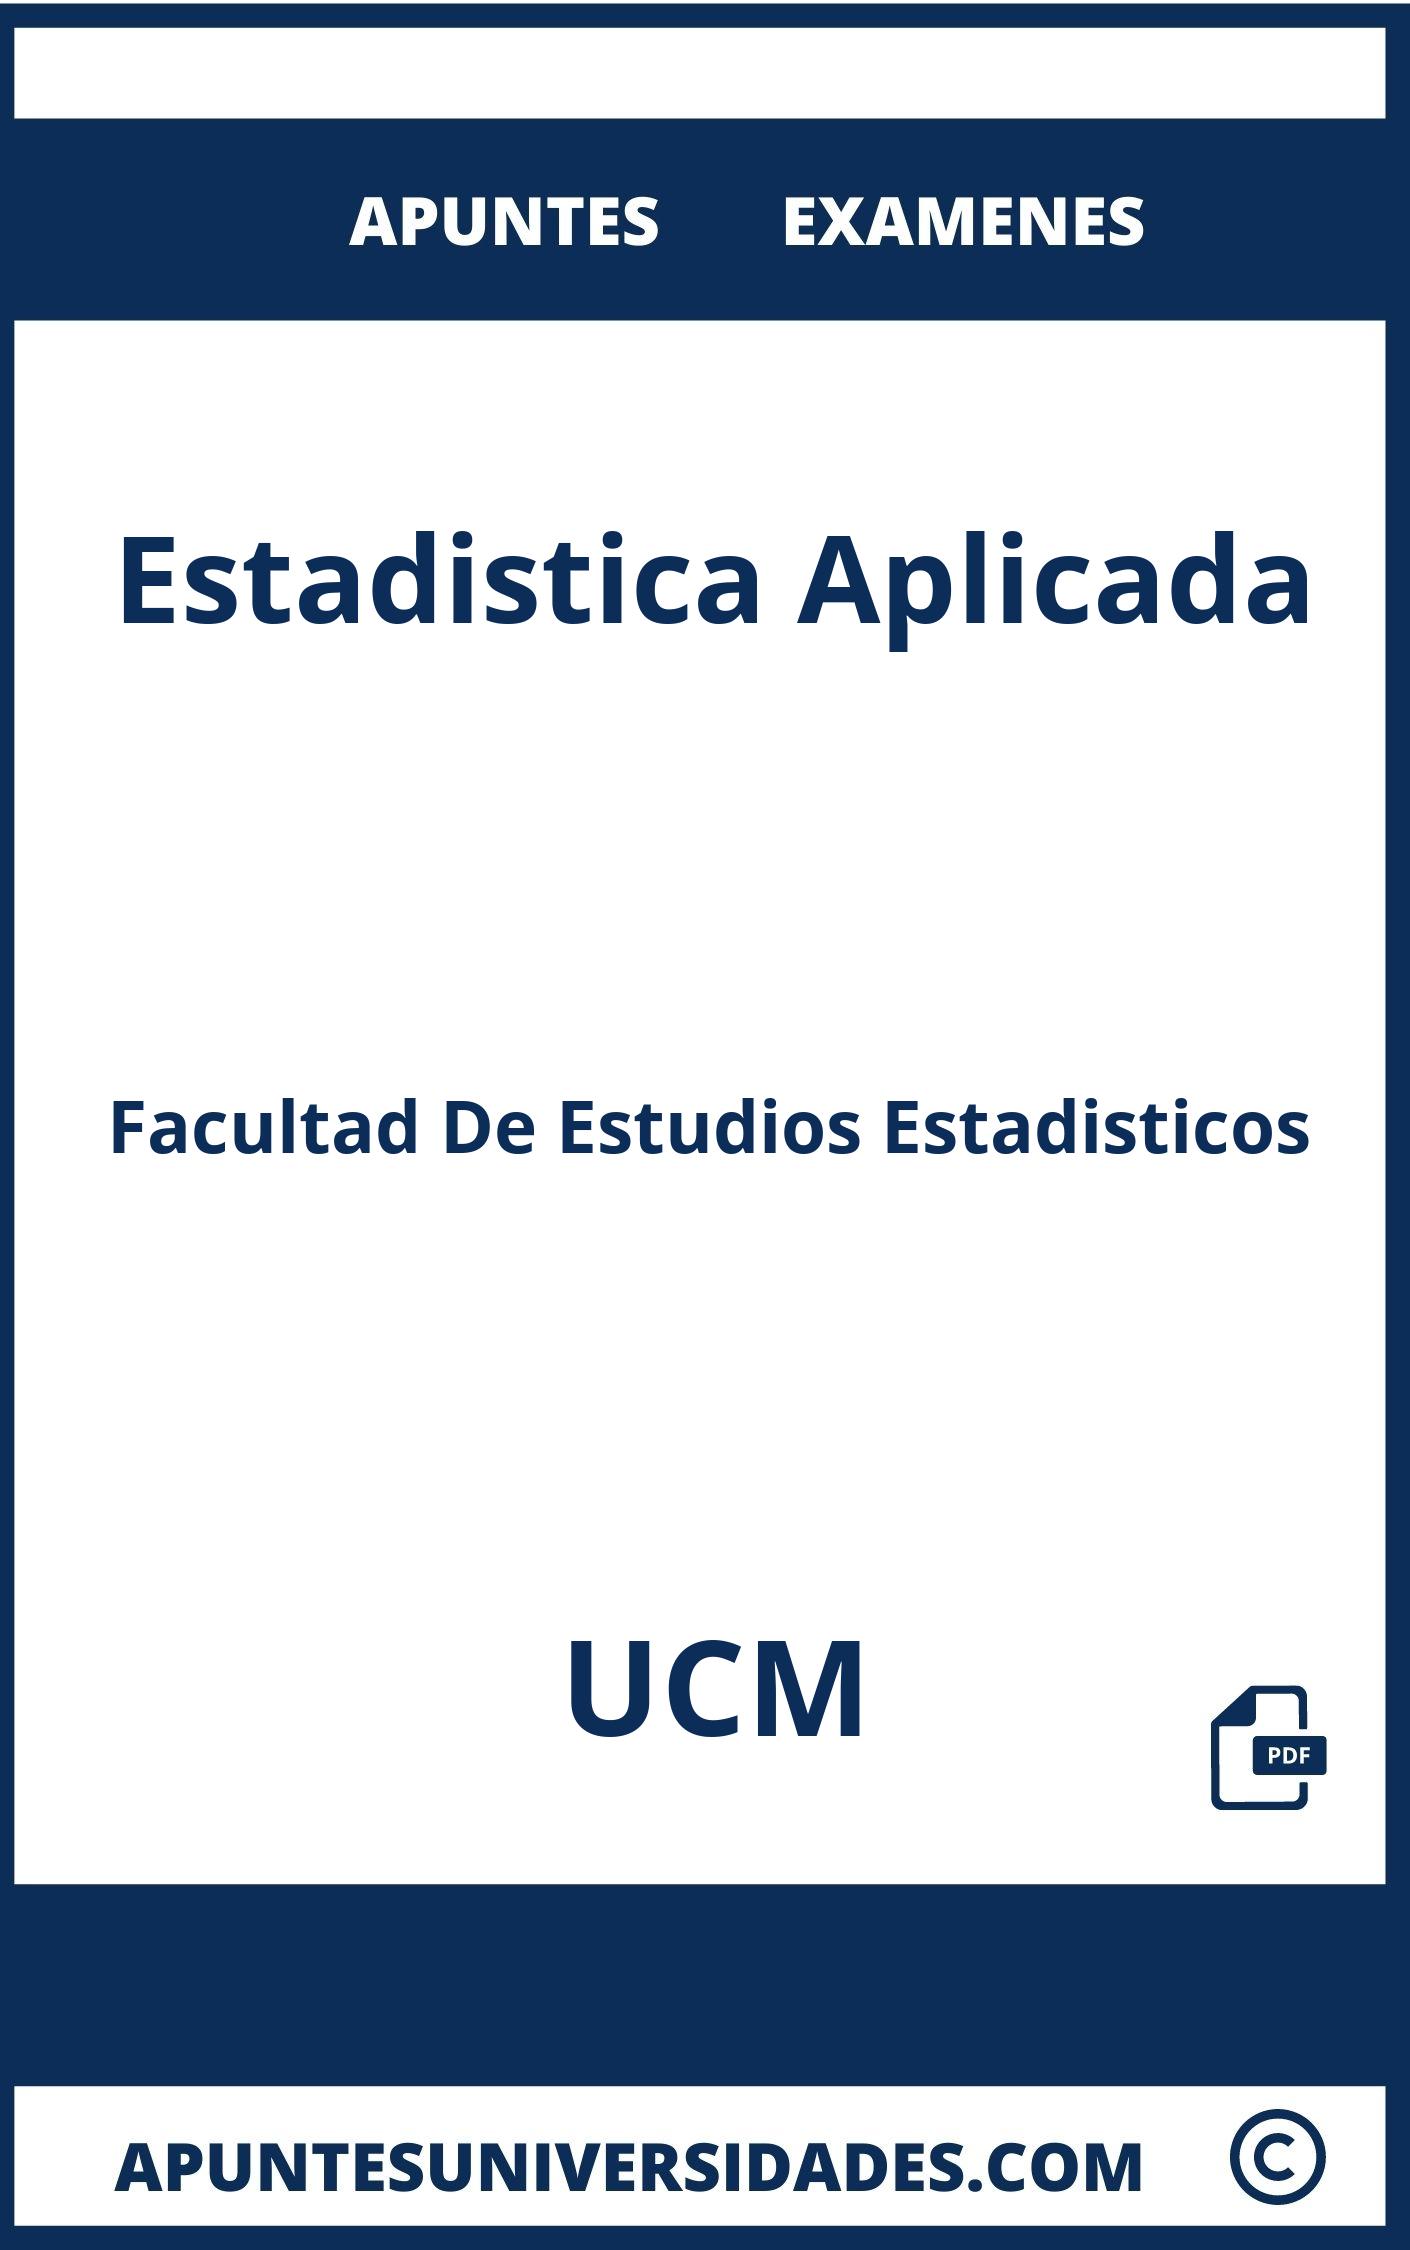 Examenes y Apuntes de Estadistica Aplicada UCM